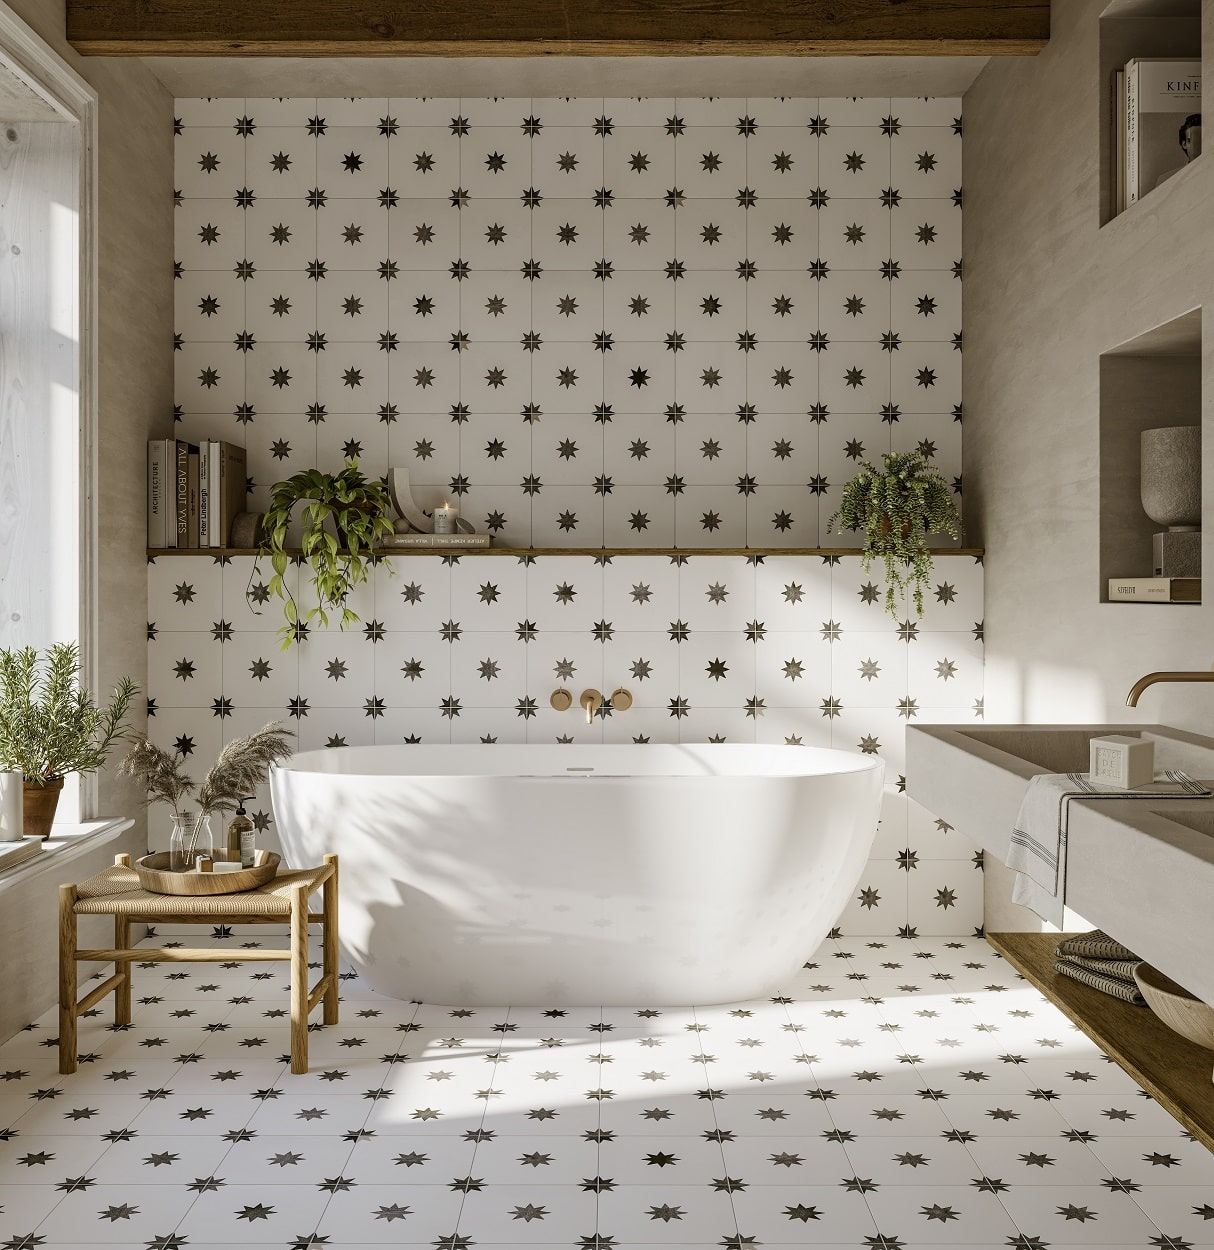 Carreau de ciment blanc motifs étoilés 45x45 cm dans une salle de bain épurée avec baignoire et éléments en bois naturel